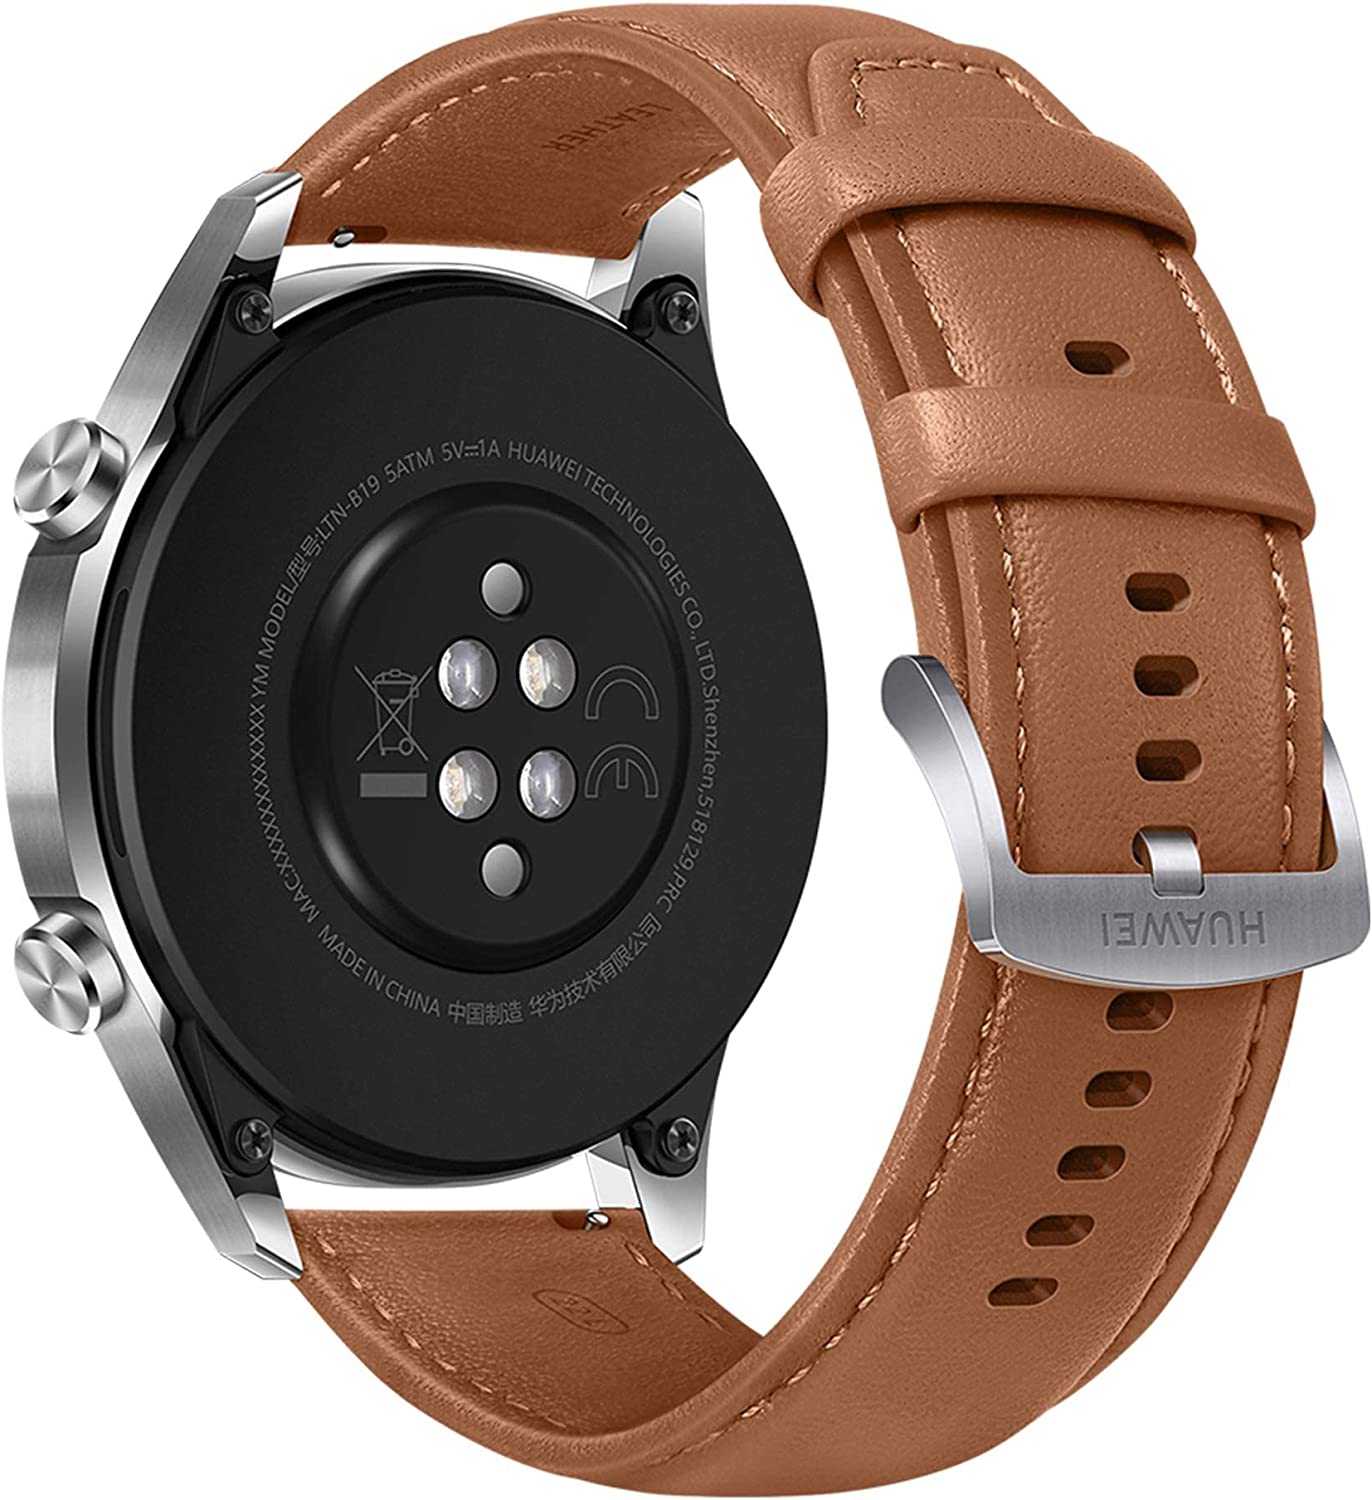 HUAWEI Watch GT 2 Bluetooth SmartWatch - Smart Tech Shopping